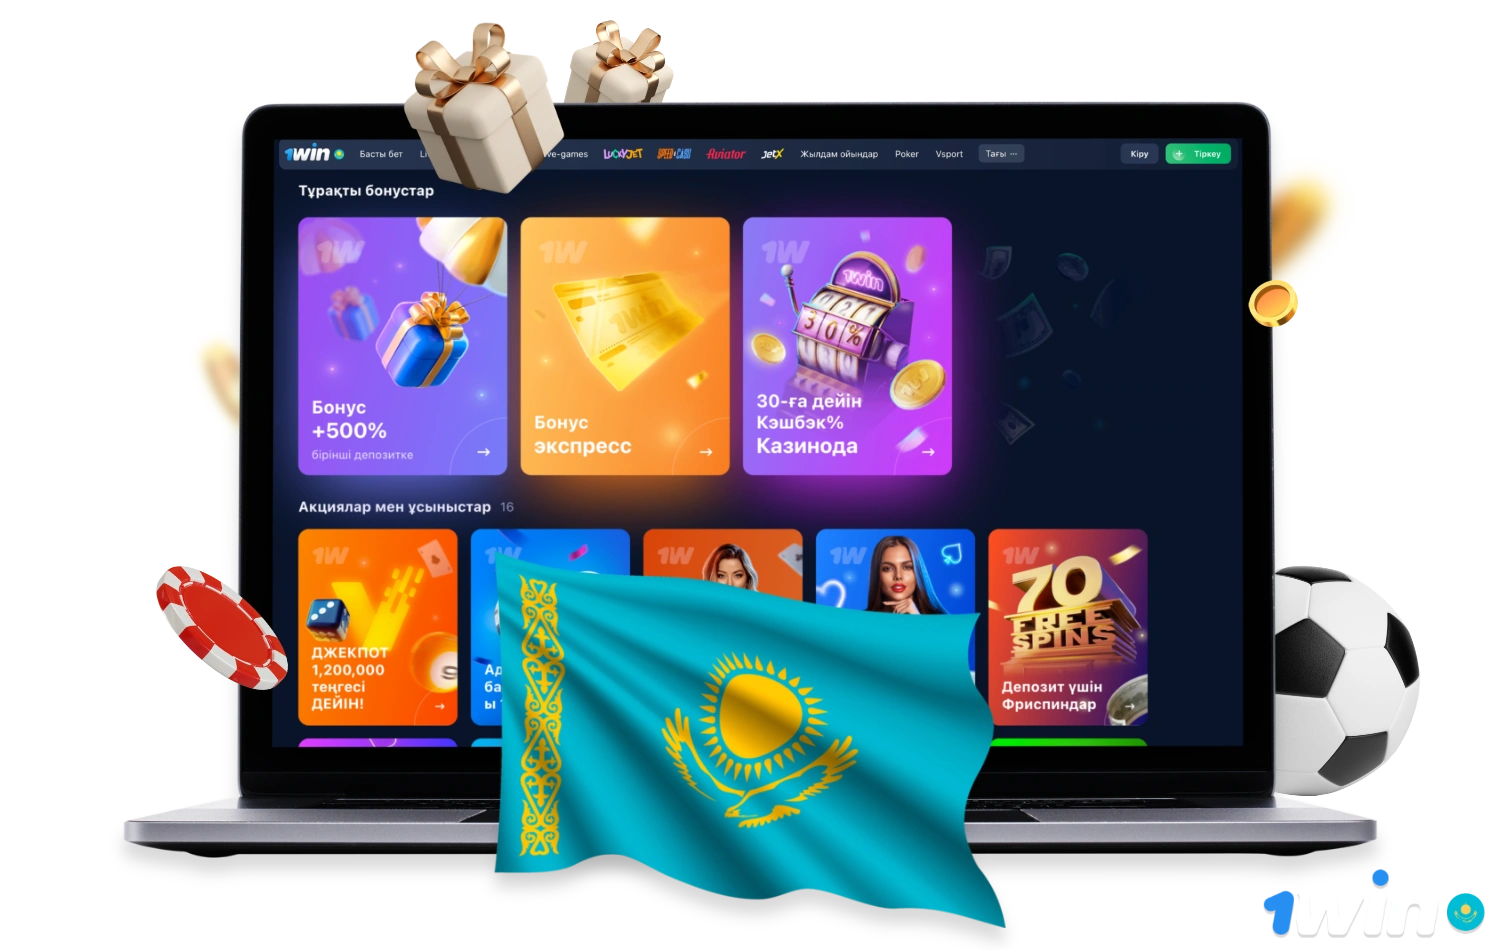 Приветственный бонус, а также различные акции 1win позволяют казахстанским пользователям получать множество бонусов